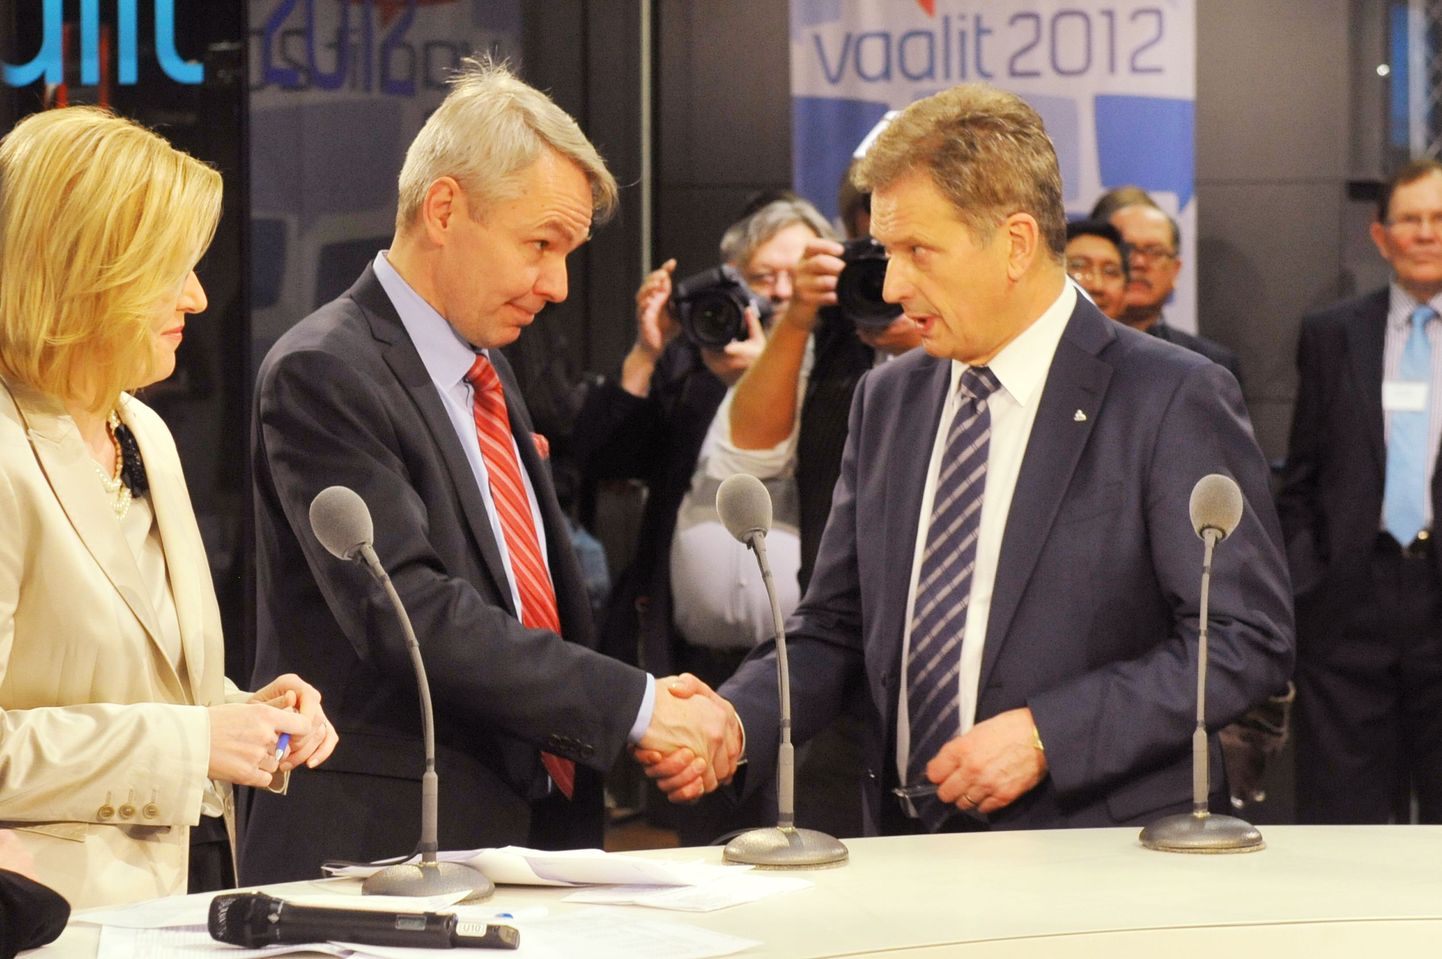 Soome presidendi valimisõhtu Helsingi Muusikamajas. Fotol presidendikandidaadid Pekka Haavisto ja Sauli Niinistö.